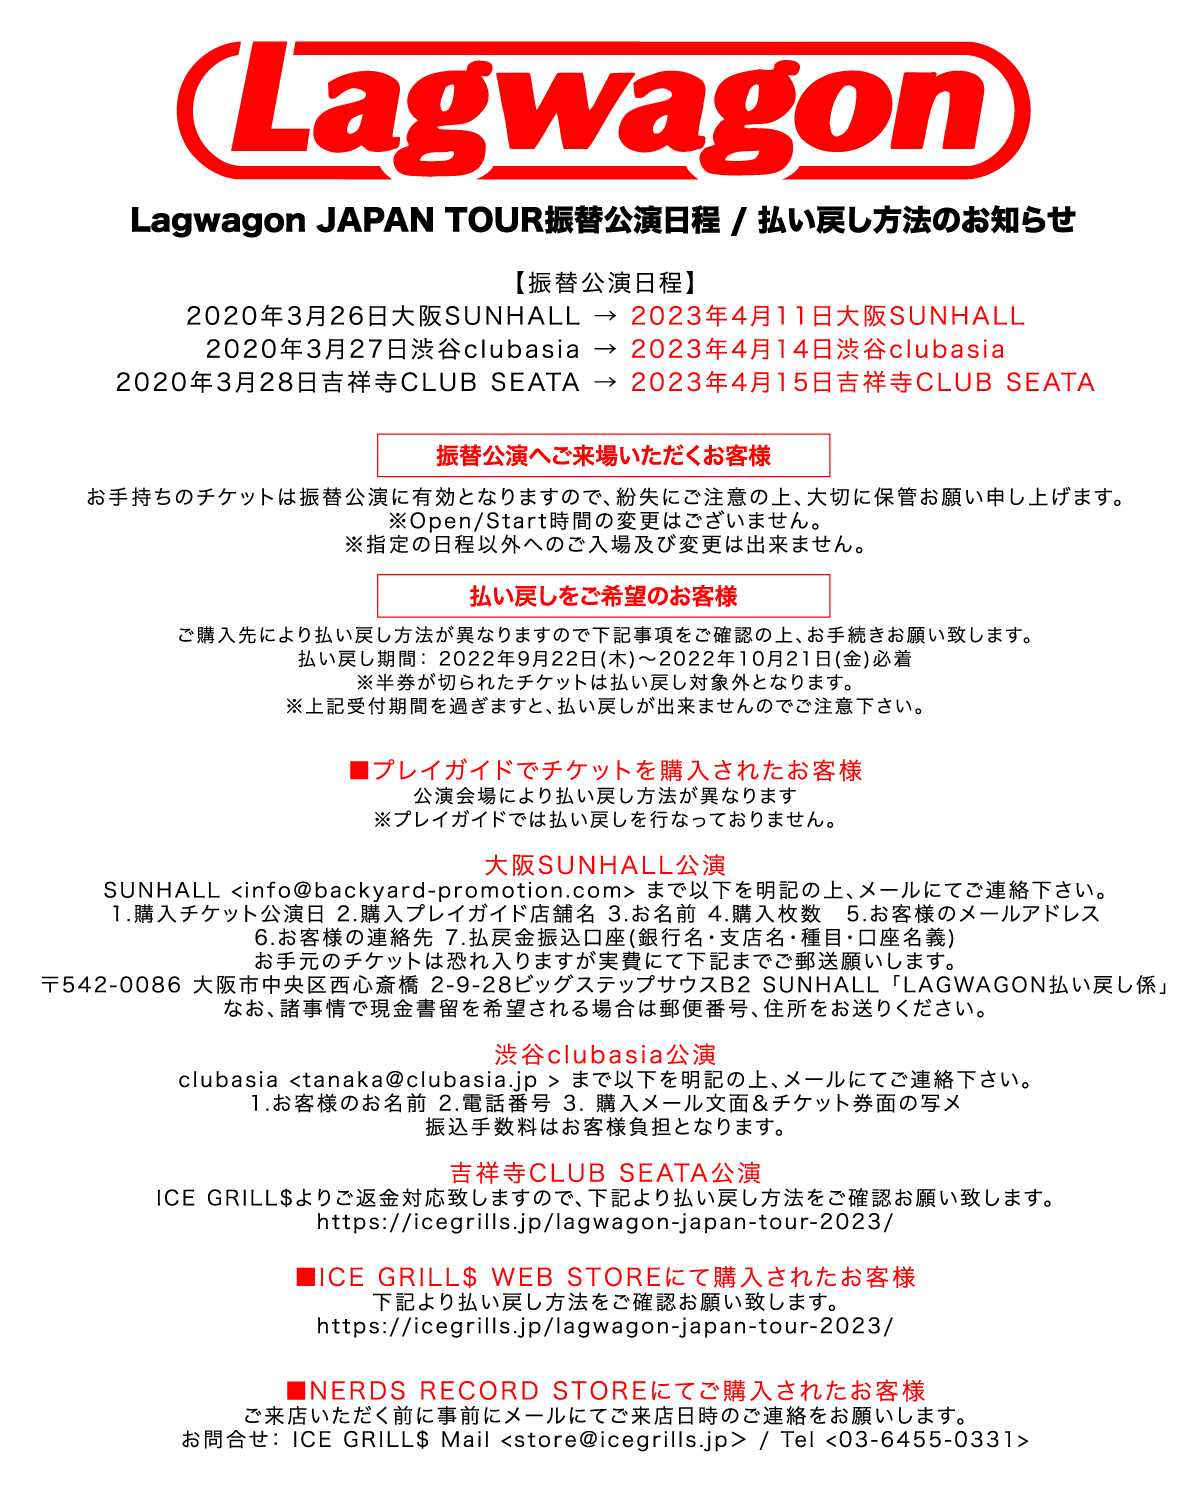 lagwagon japan tour 2023